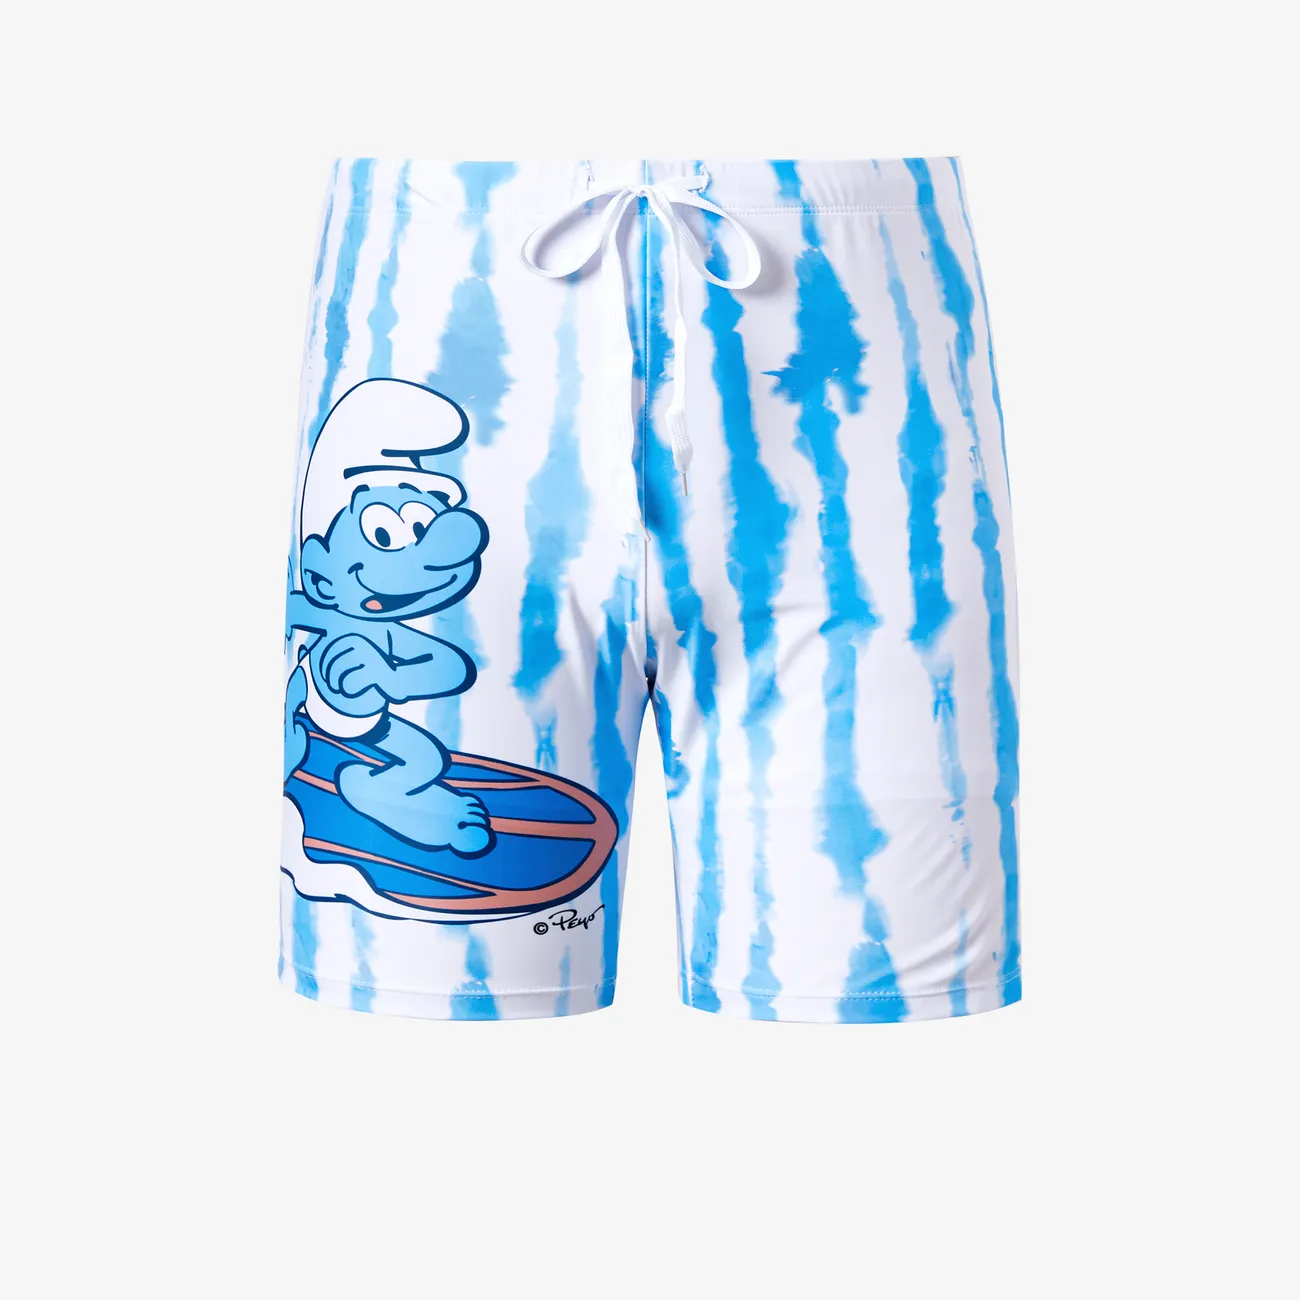 Os Smurfs Dia da Mãe Look de família Conjuntos de roupa para a família Fato de banho colorido big image 1